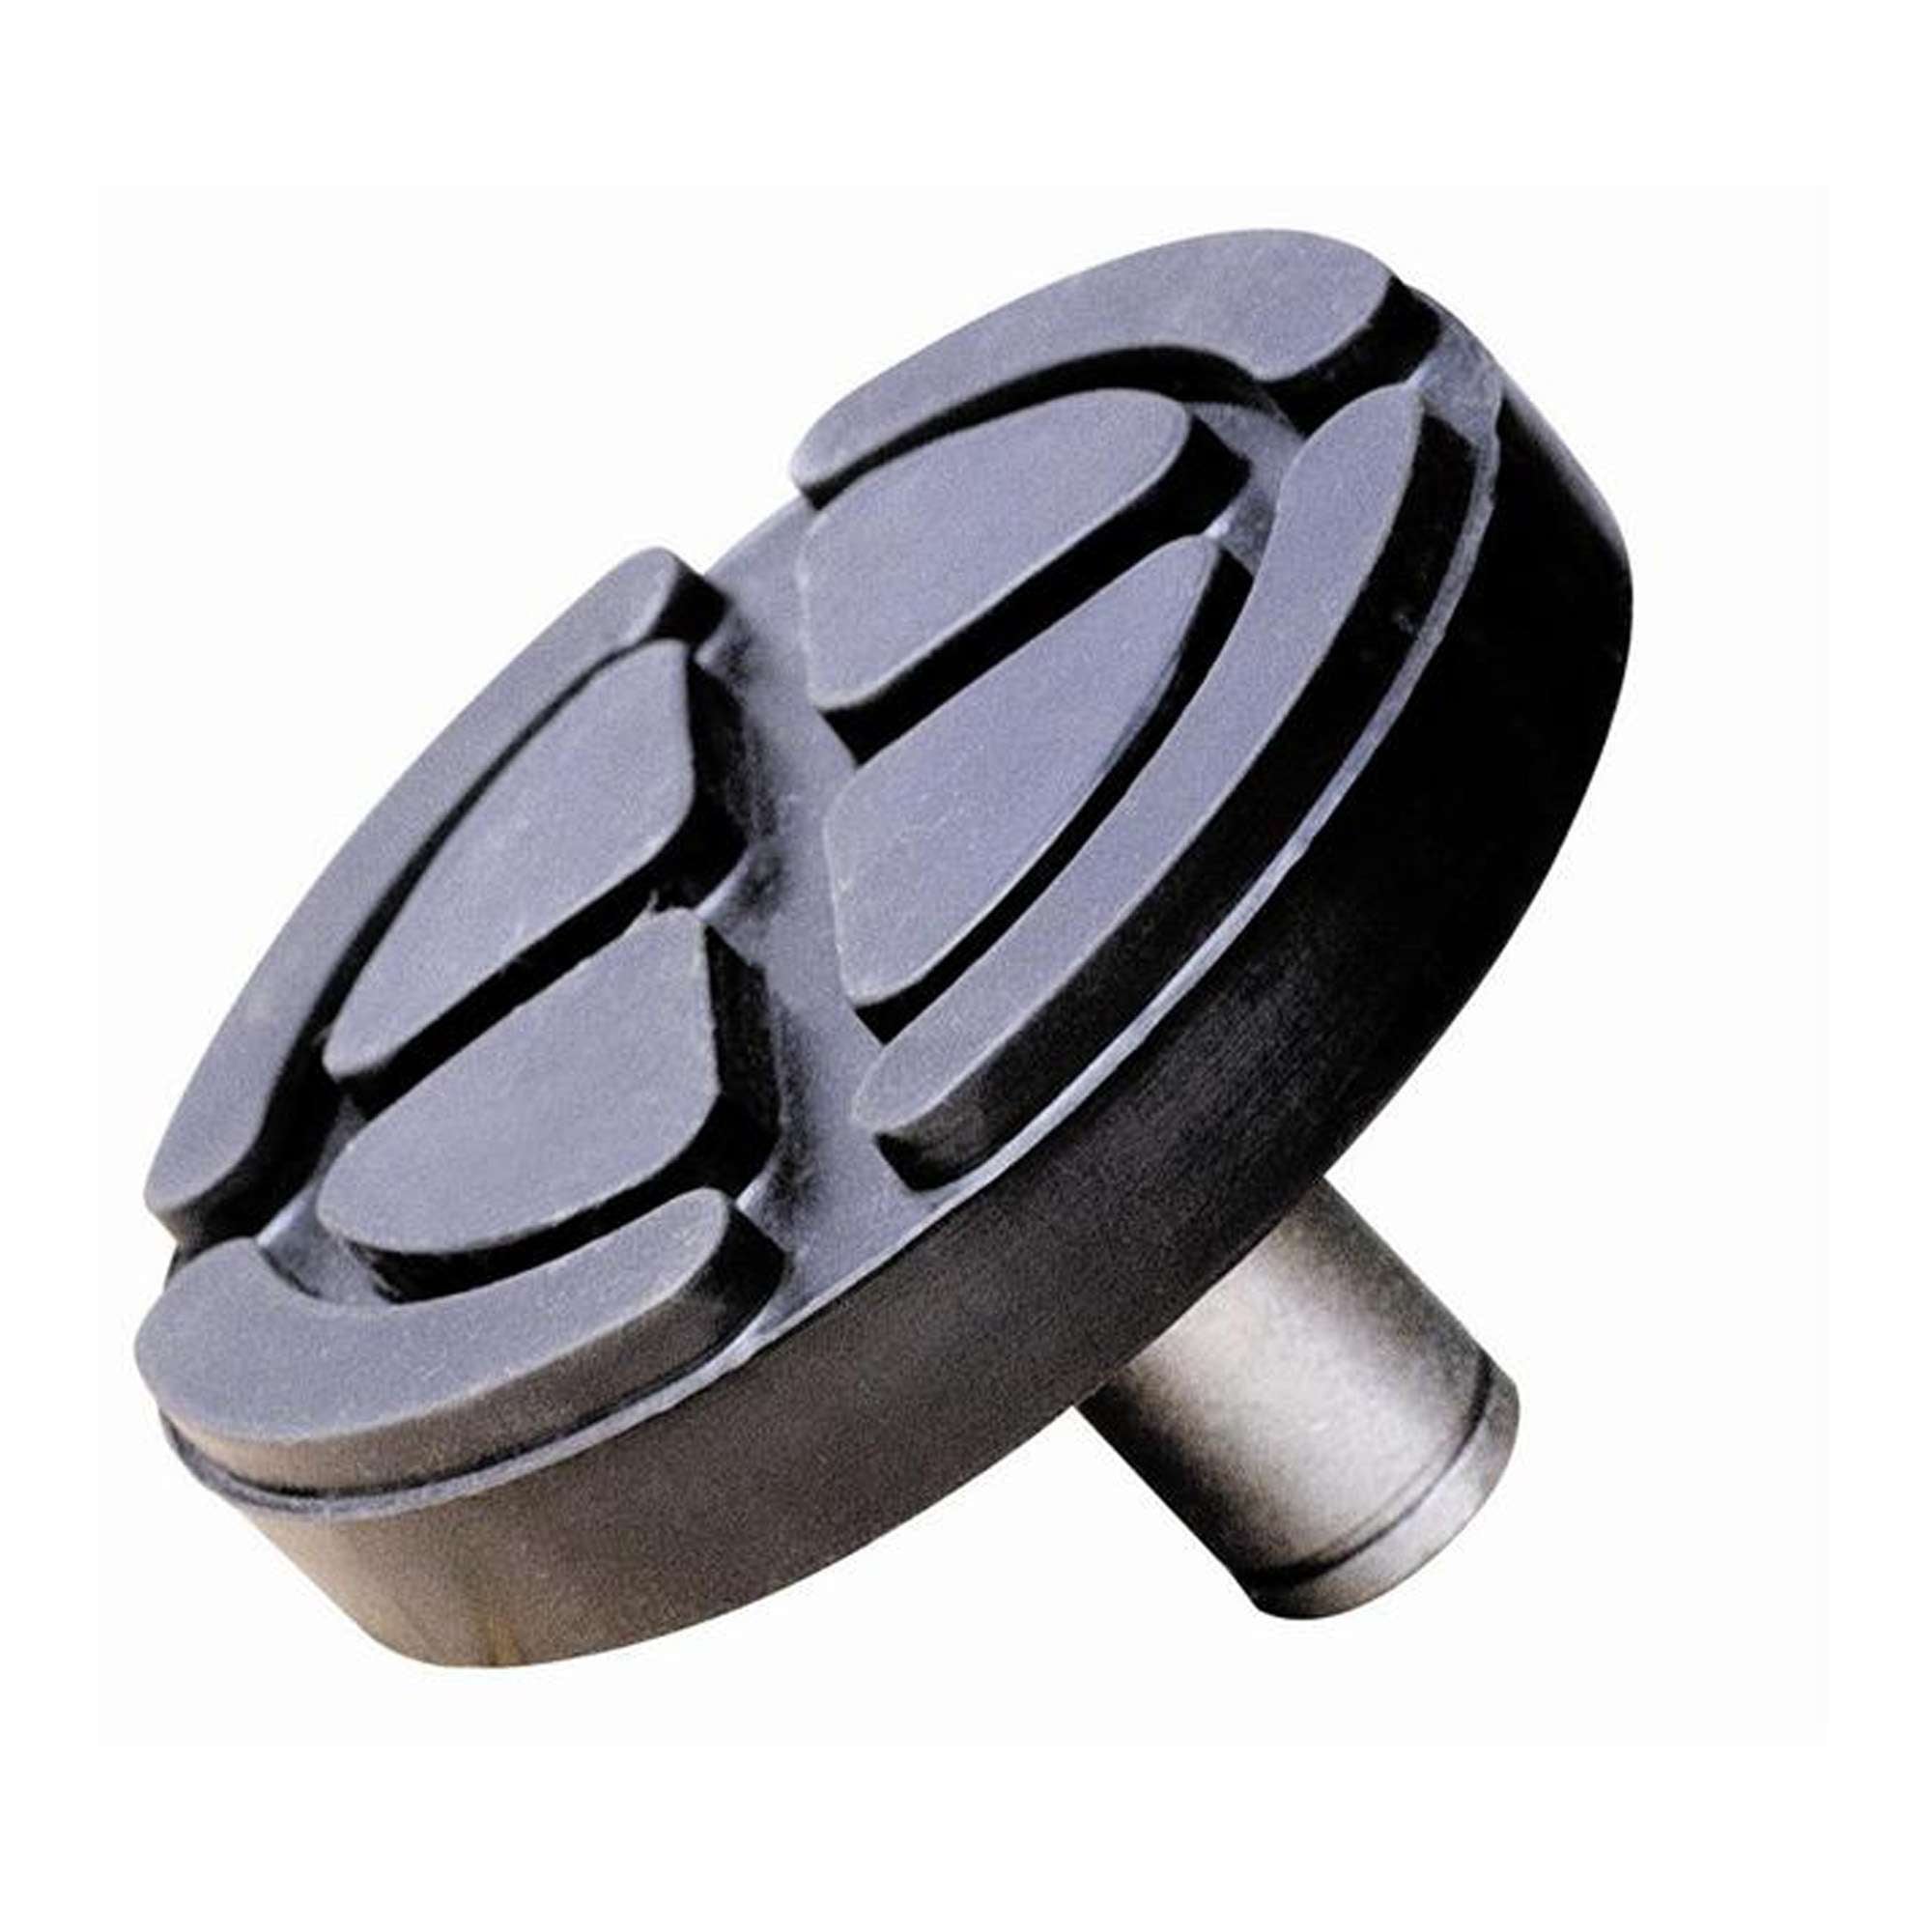 Supporto in acciaio ricoperto in gomma per sollevatori idraulici - OMCN 392/A